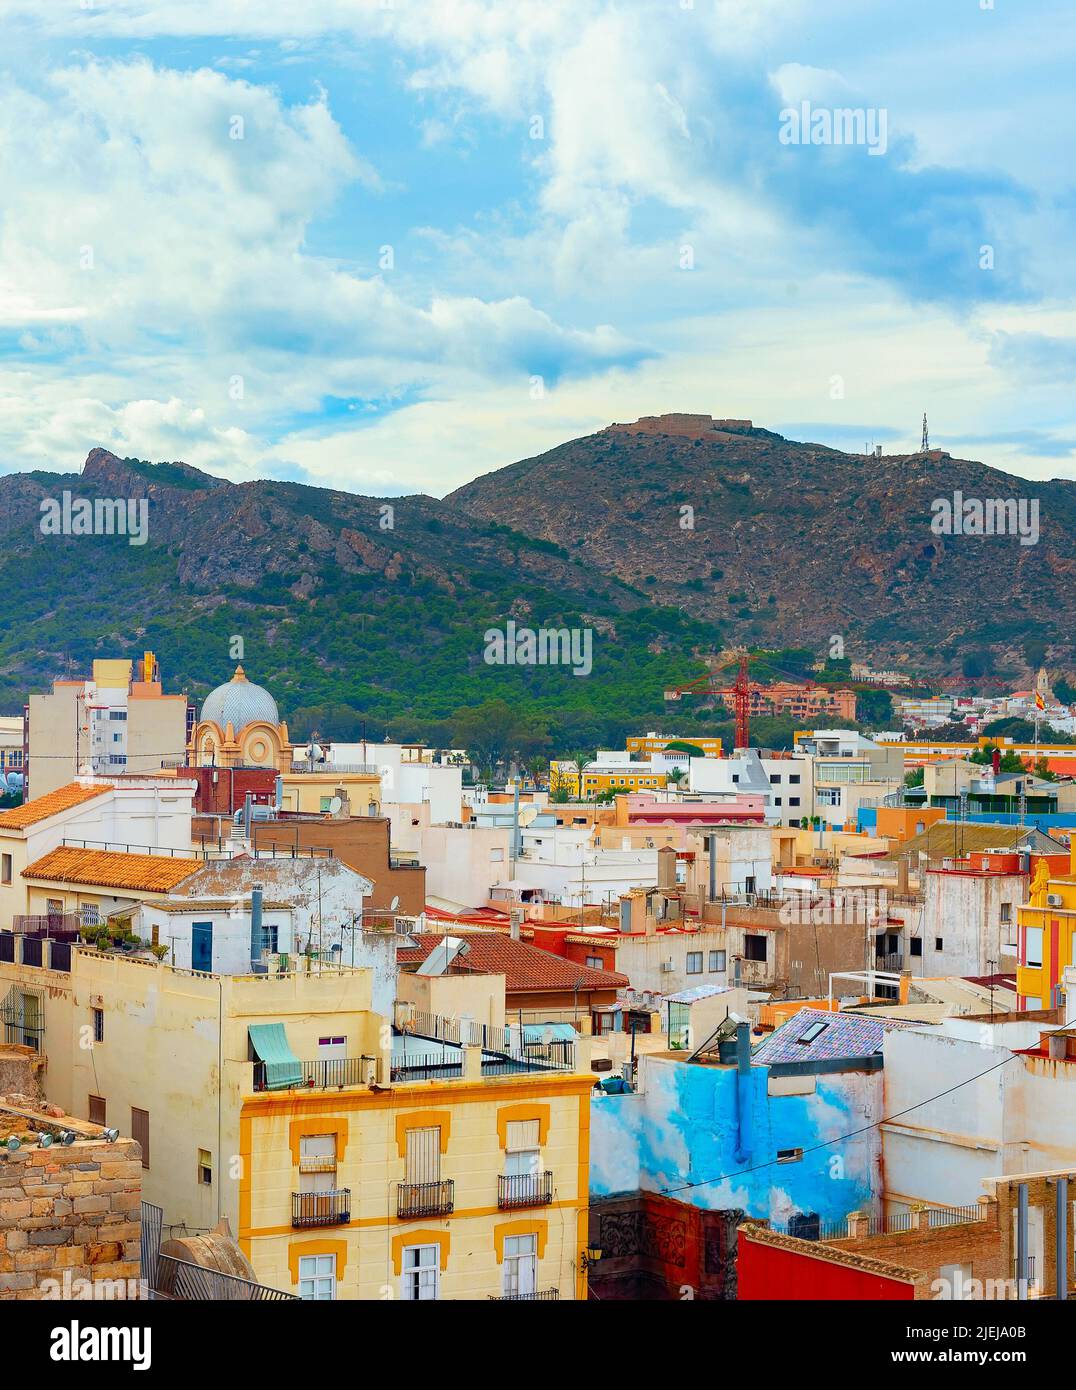 Paisaje urbano con montañas y coloridas casas en el fondo, Cartagena, España Foto de stock